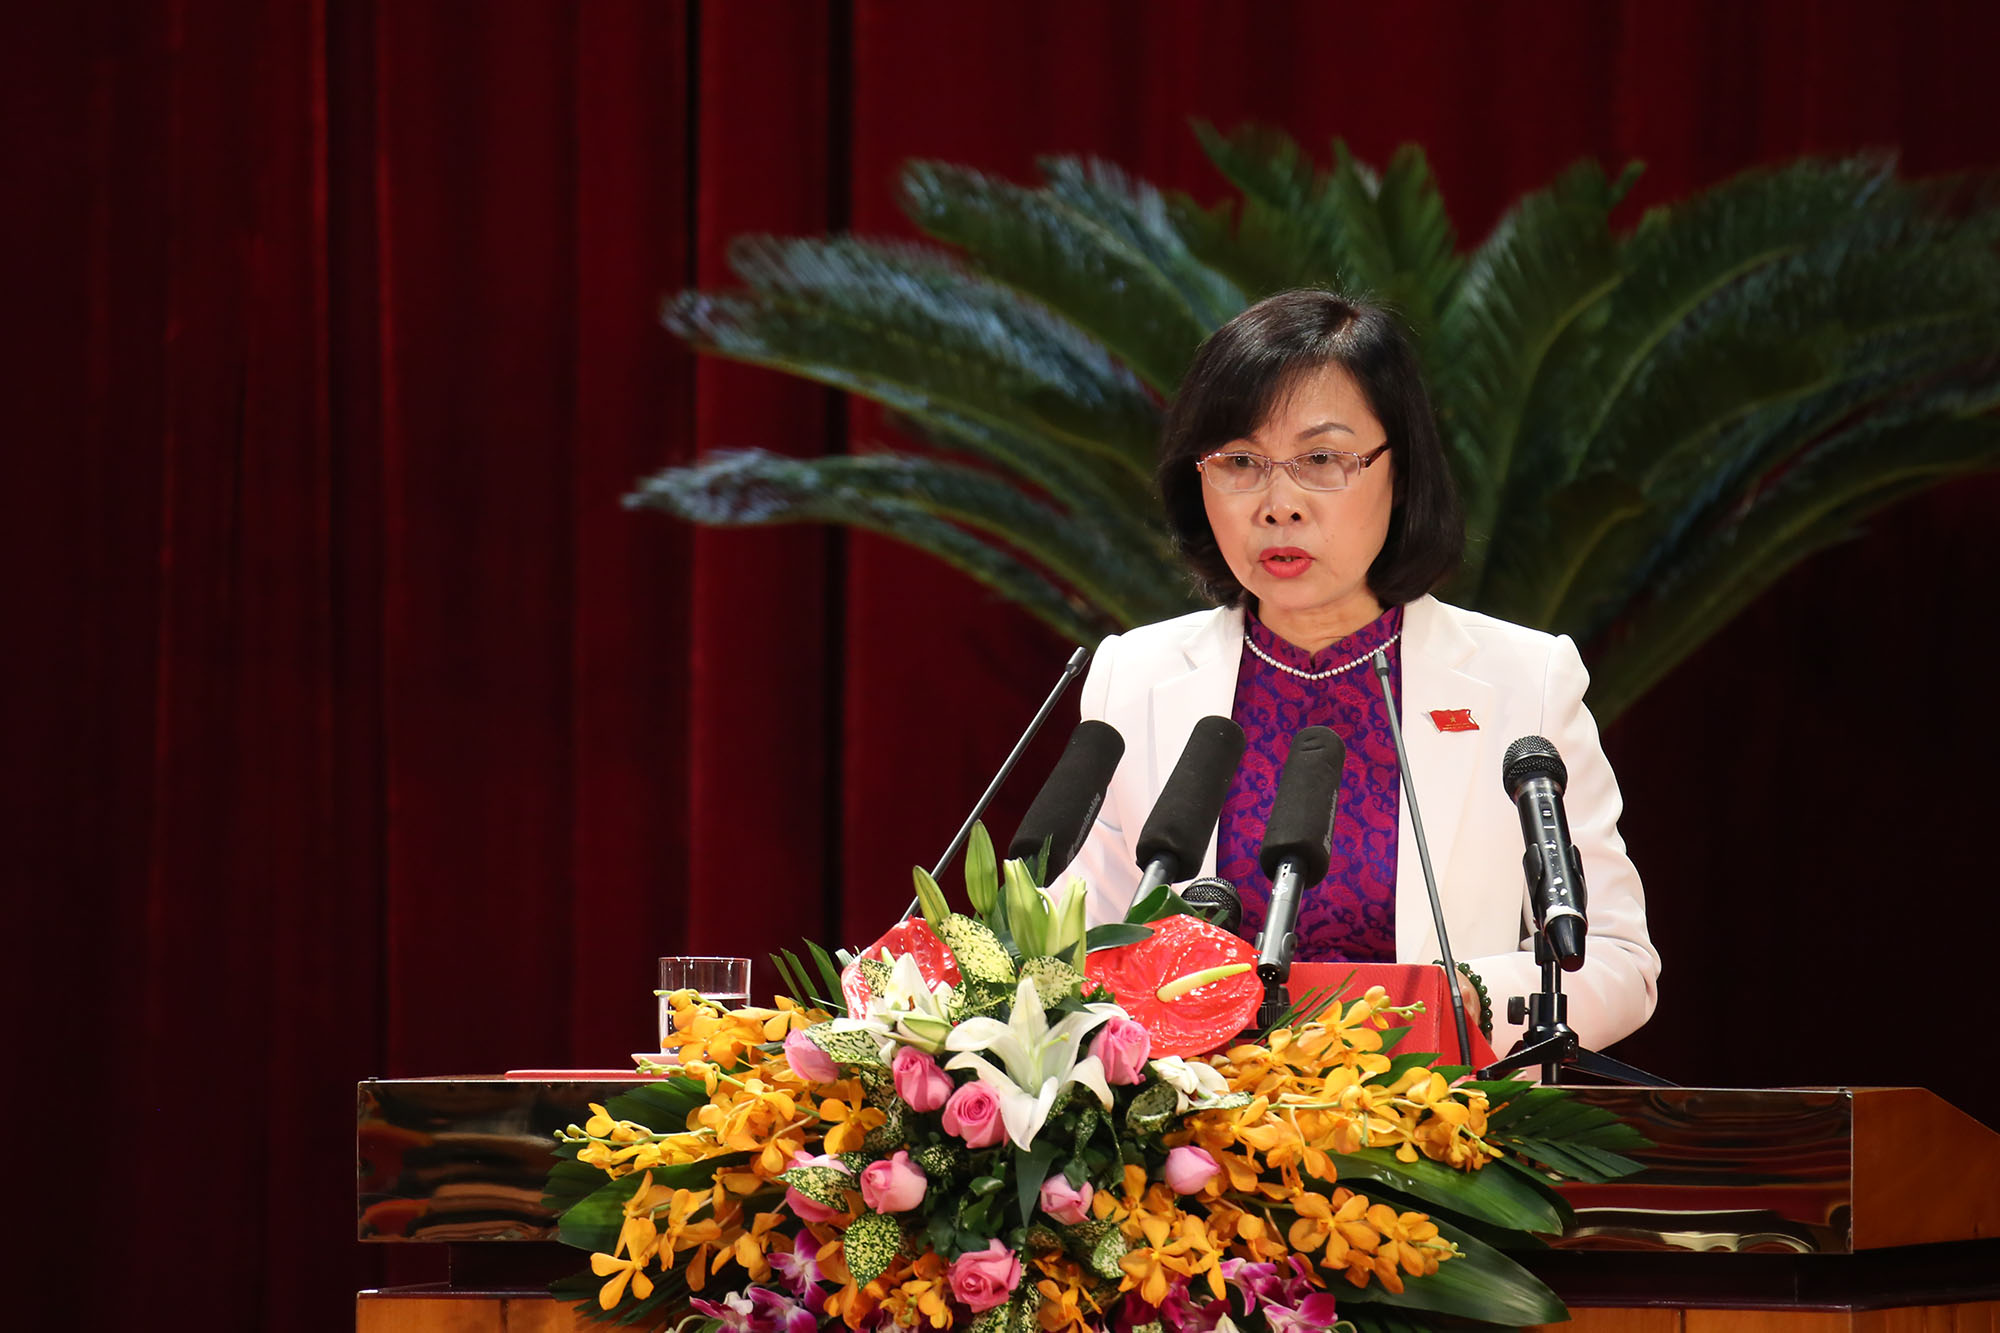 Đồng chí Trần Thị Thu Hoài, Trưởng Ban Văn hóa - Xã hội trình bày tóm tắt các báo cáo thẩm tra của Ban về các nội dung 